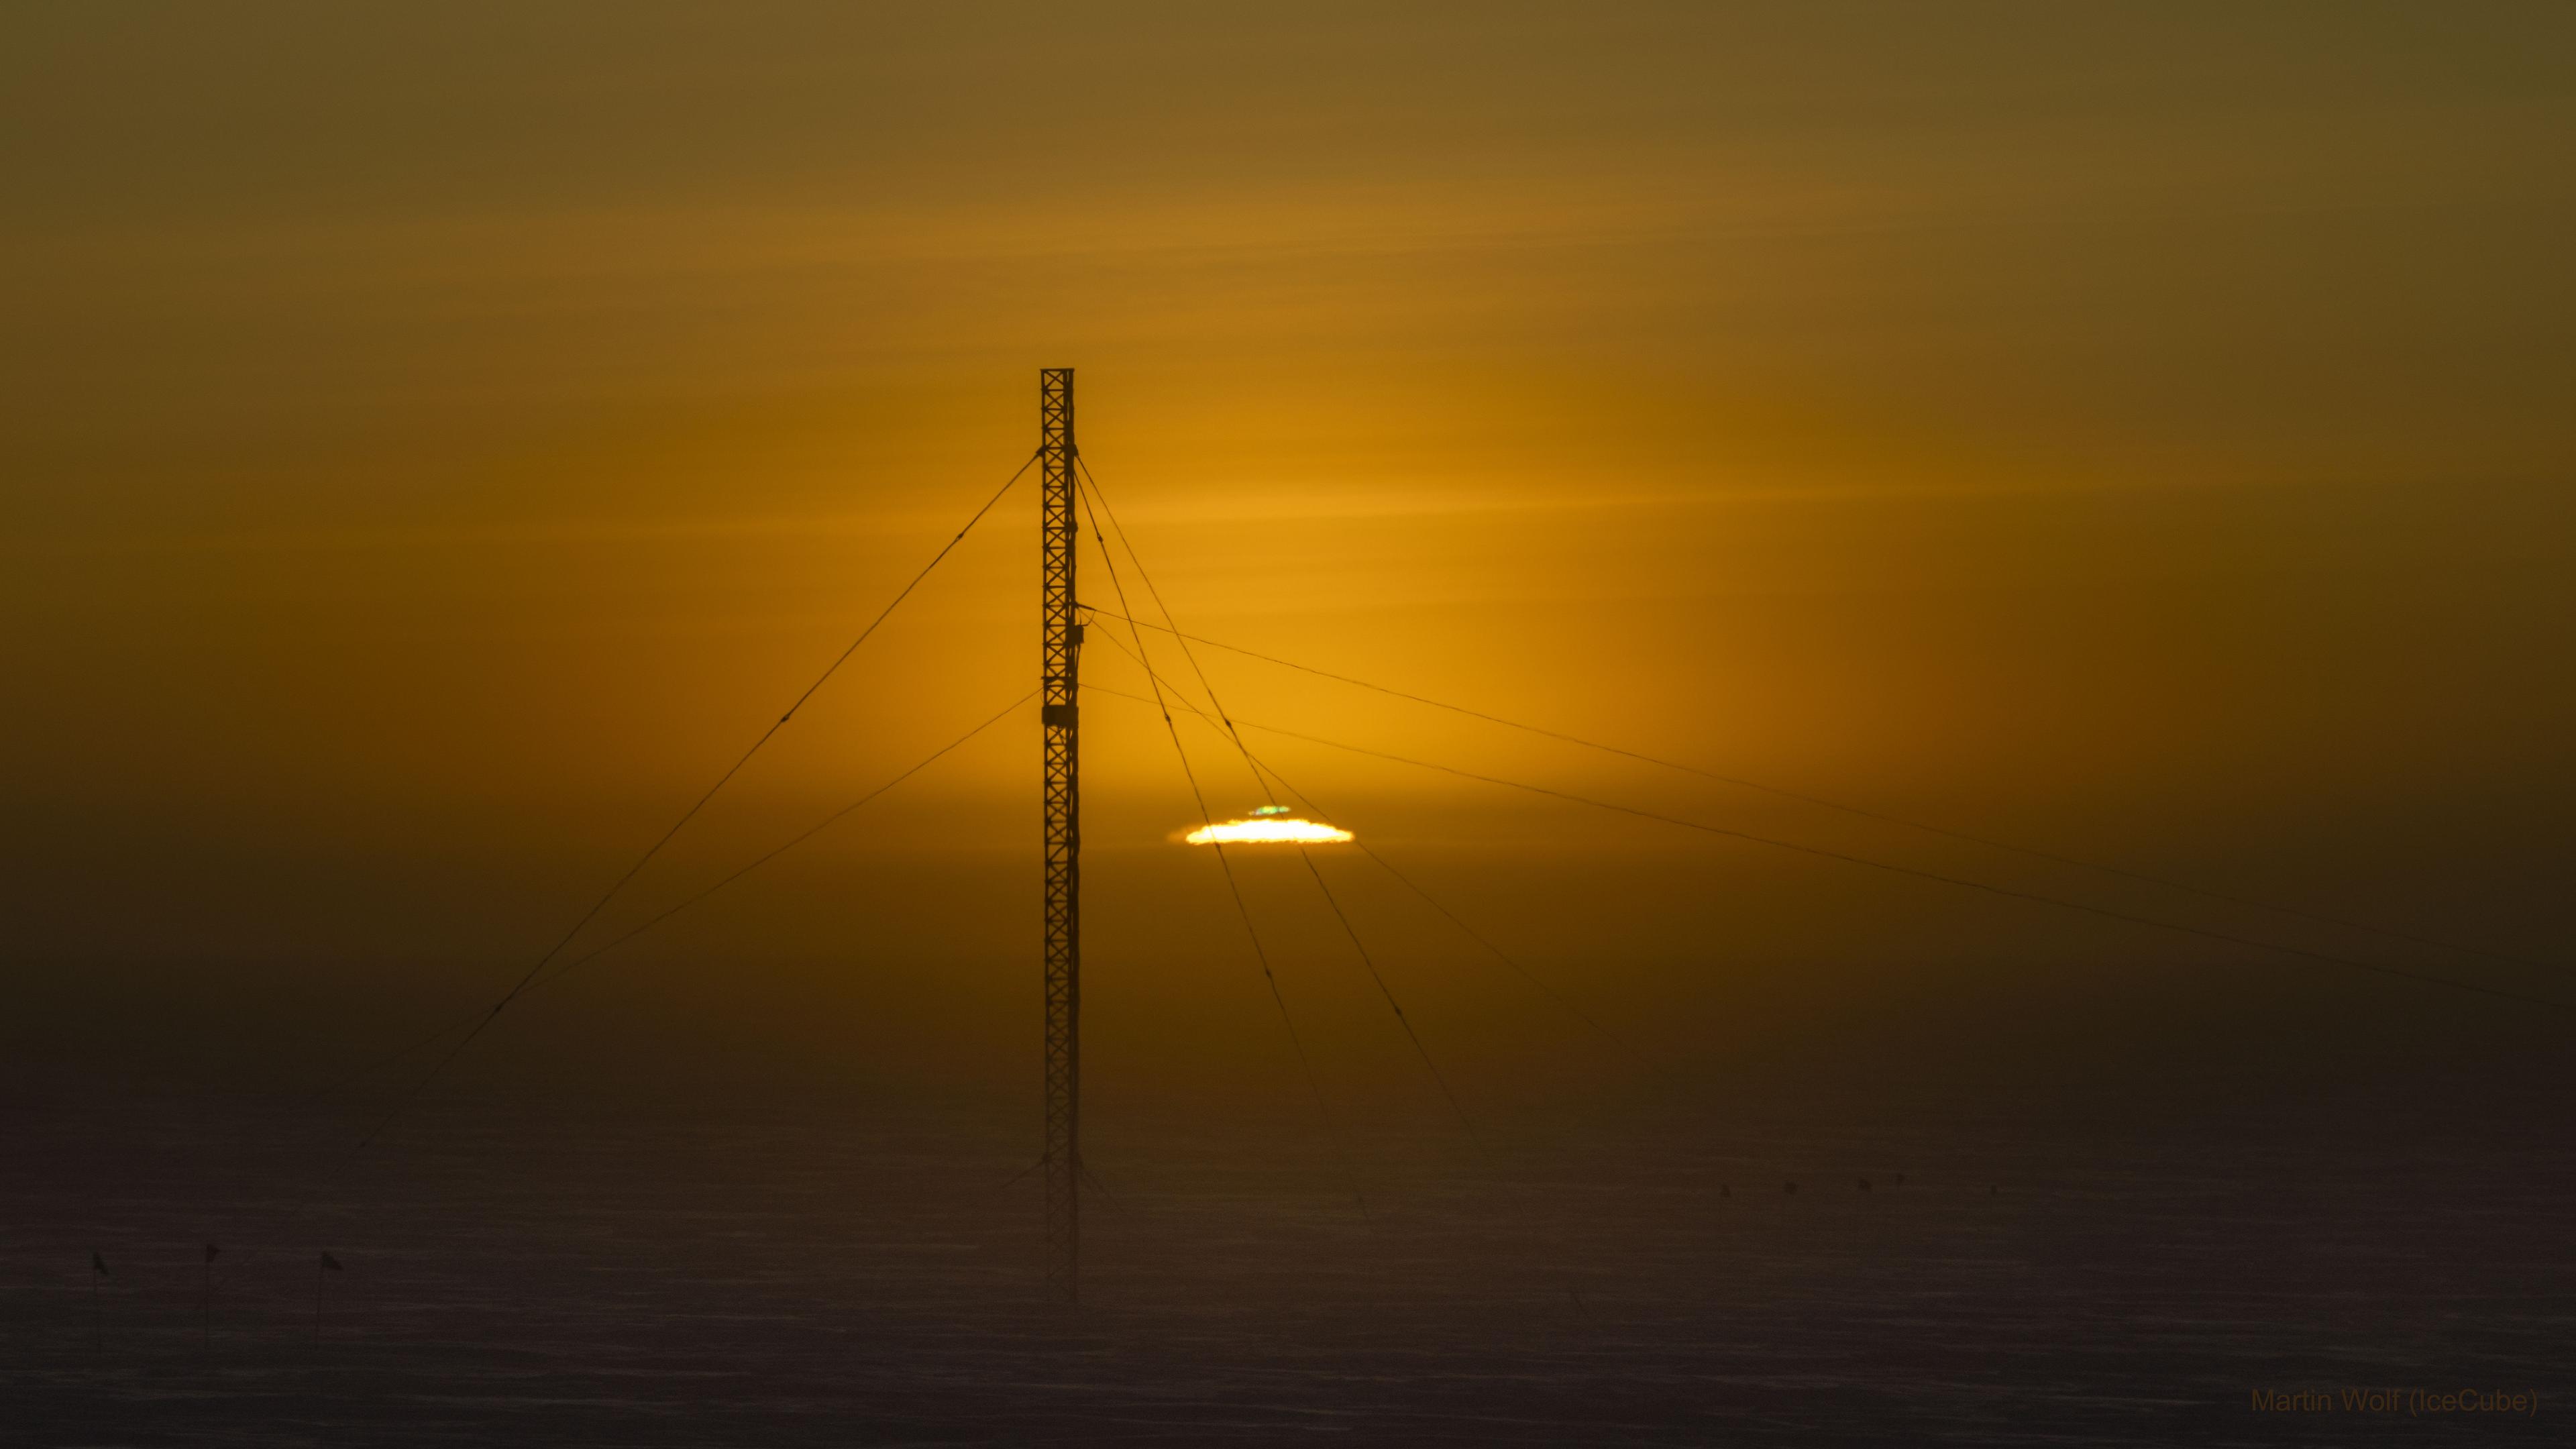 شروق الشمس في الأسبوع الماضي في القطب الجنوبي خلال الاعتدال. يظهر برج اتصالات في مقدّمة الصورة، بينما تظهر الشمس وميضاً أخضراً في أعلاها.